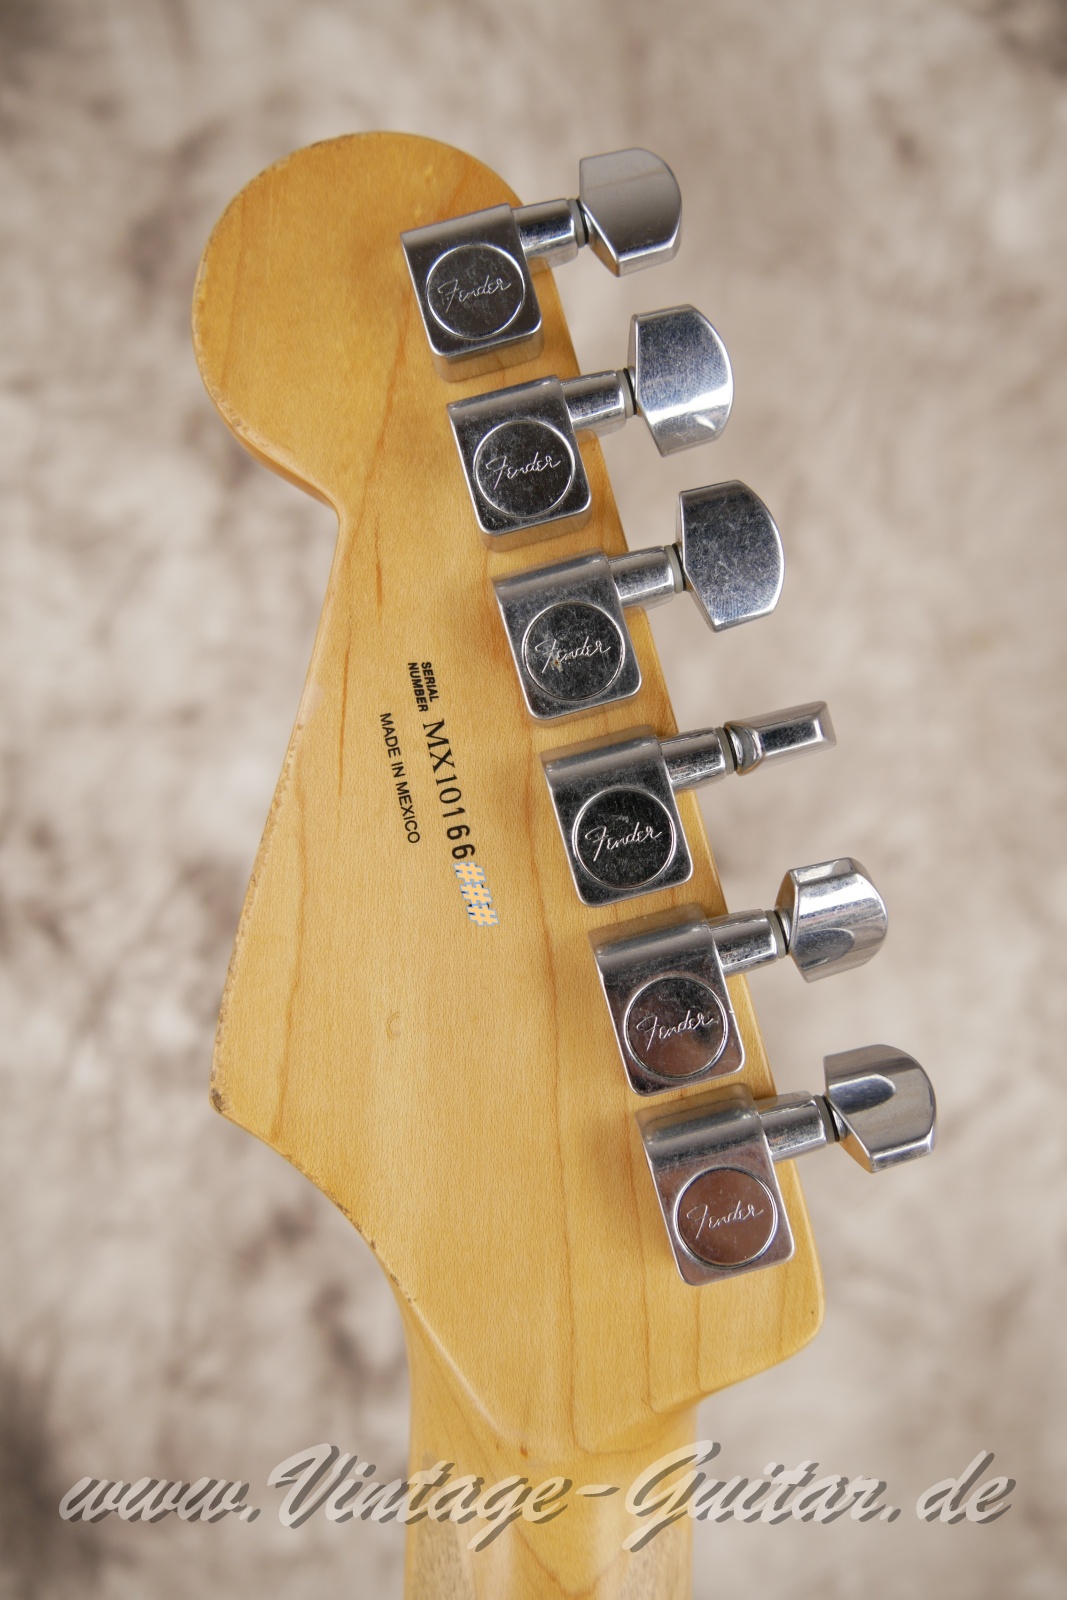 Fender-Stratocaster-roadworn-player-series-60s-reissue-2011-olympic-white-004.jpg